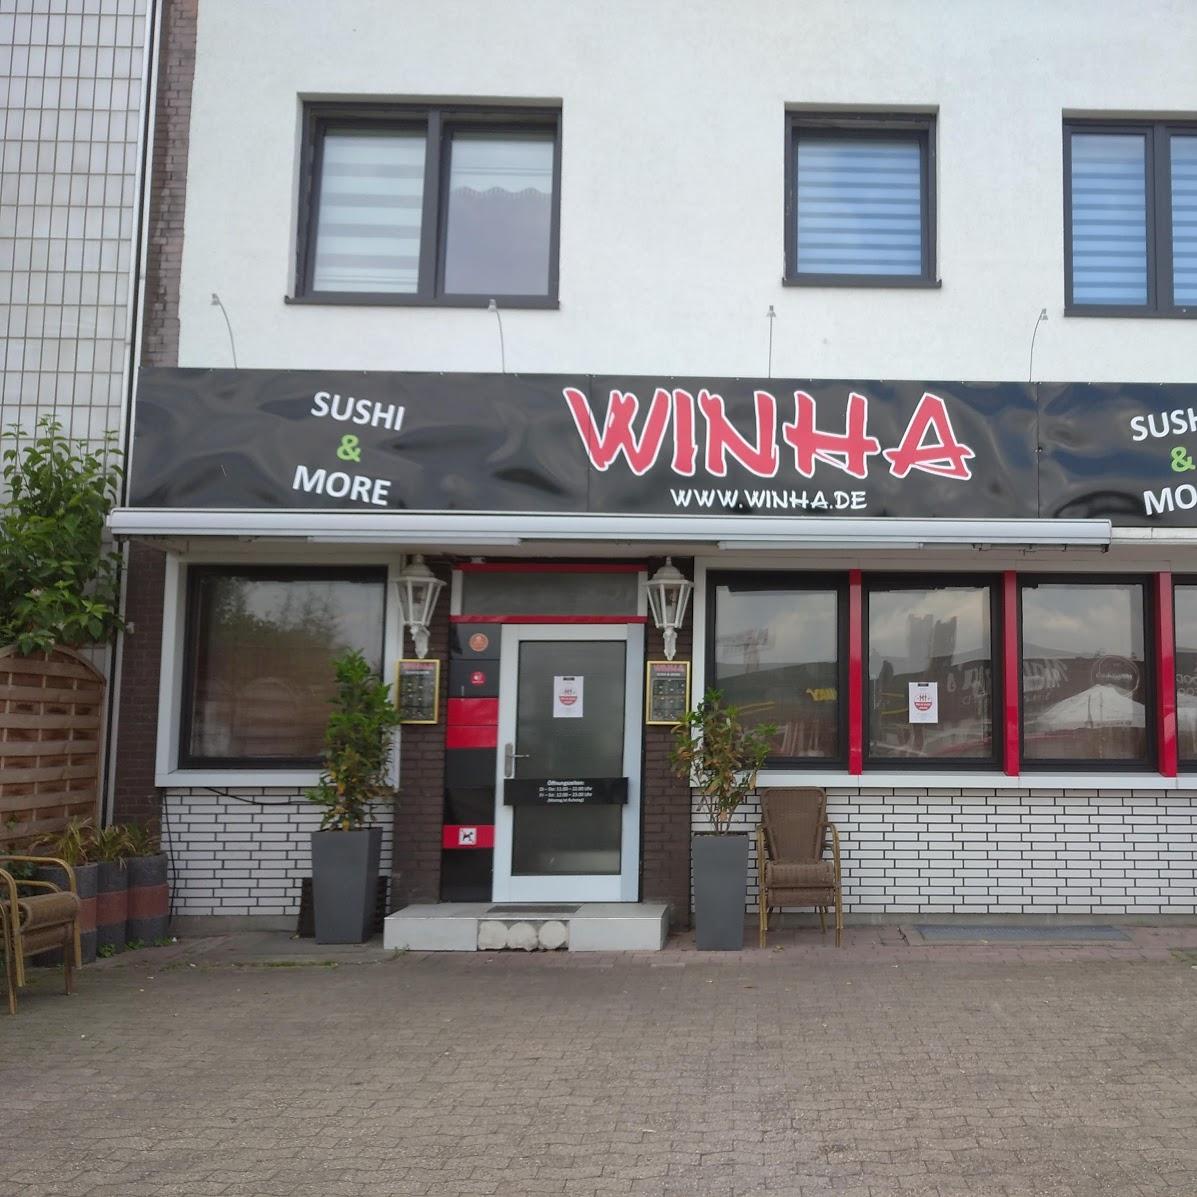 Restaurant "Winha - Sushi & More" in Kamp-Lintfort